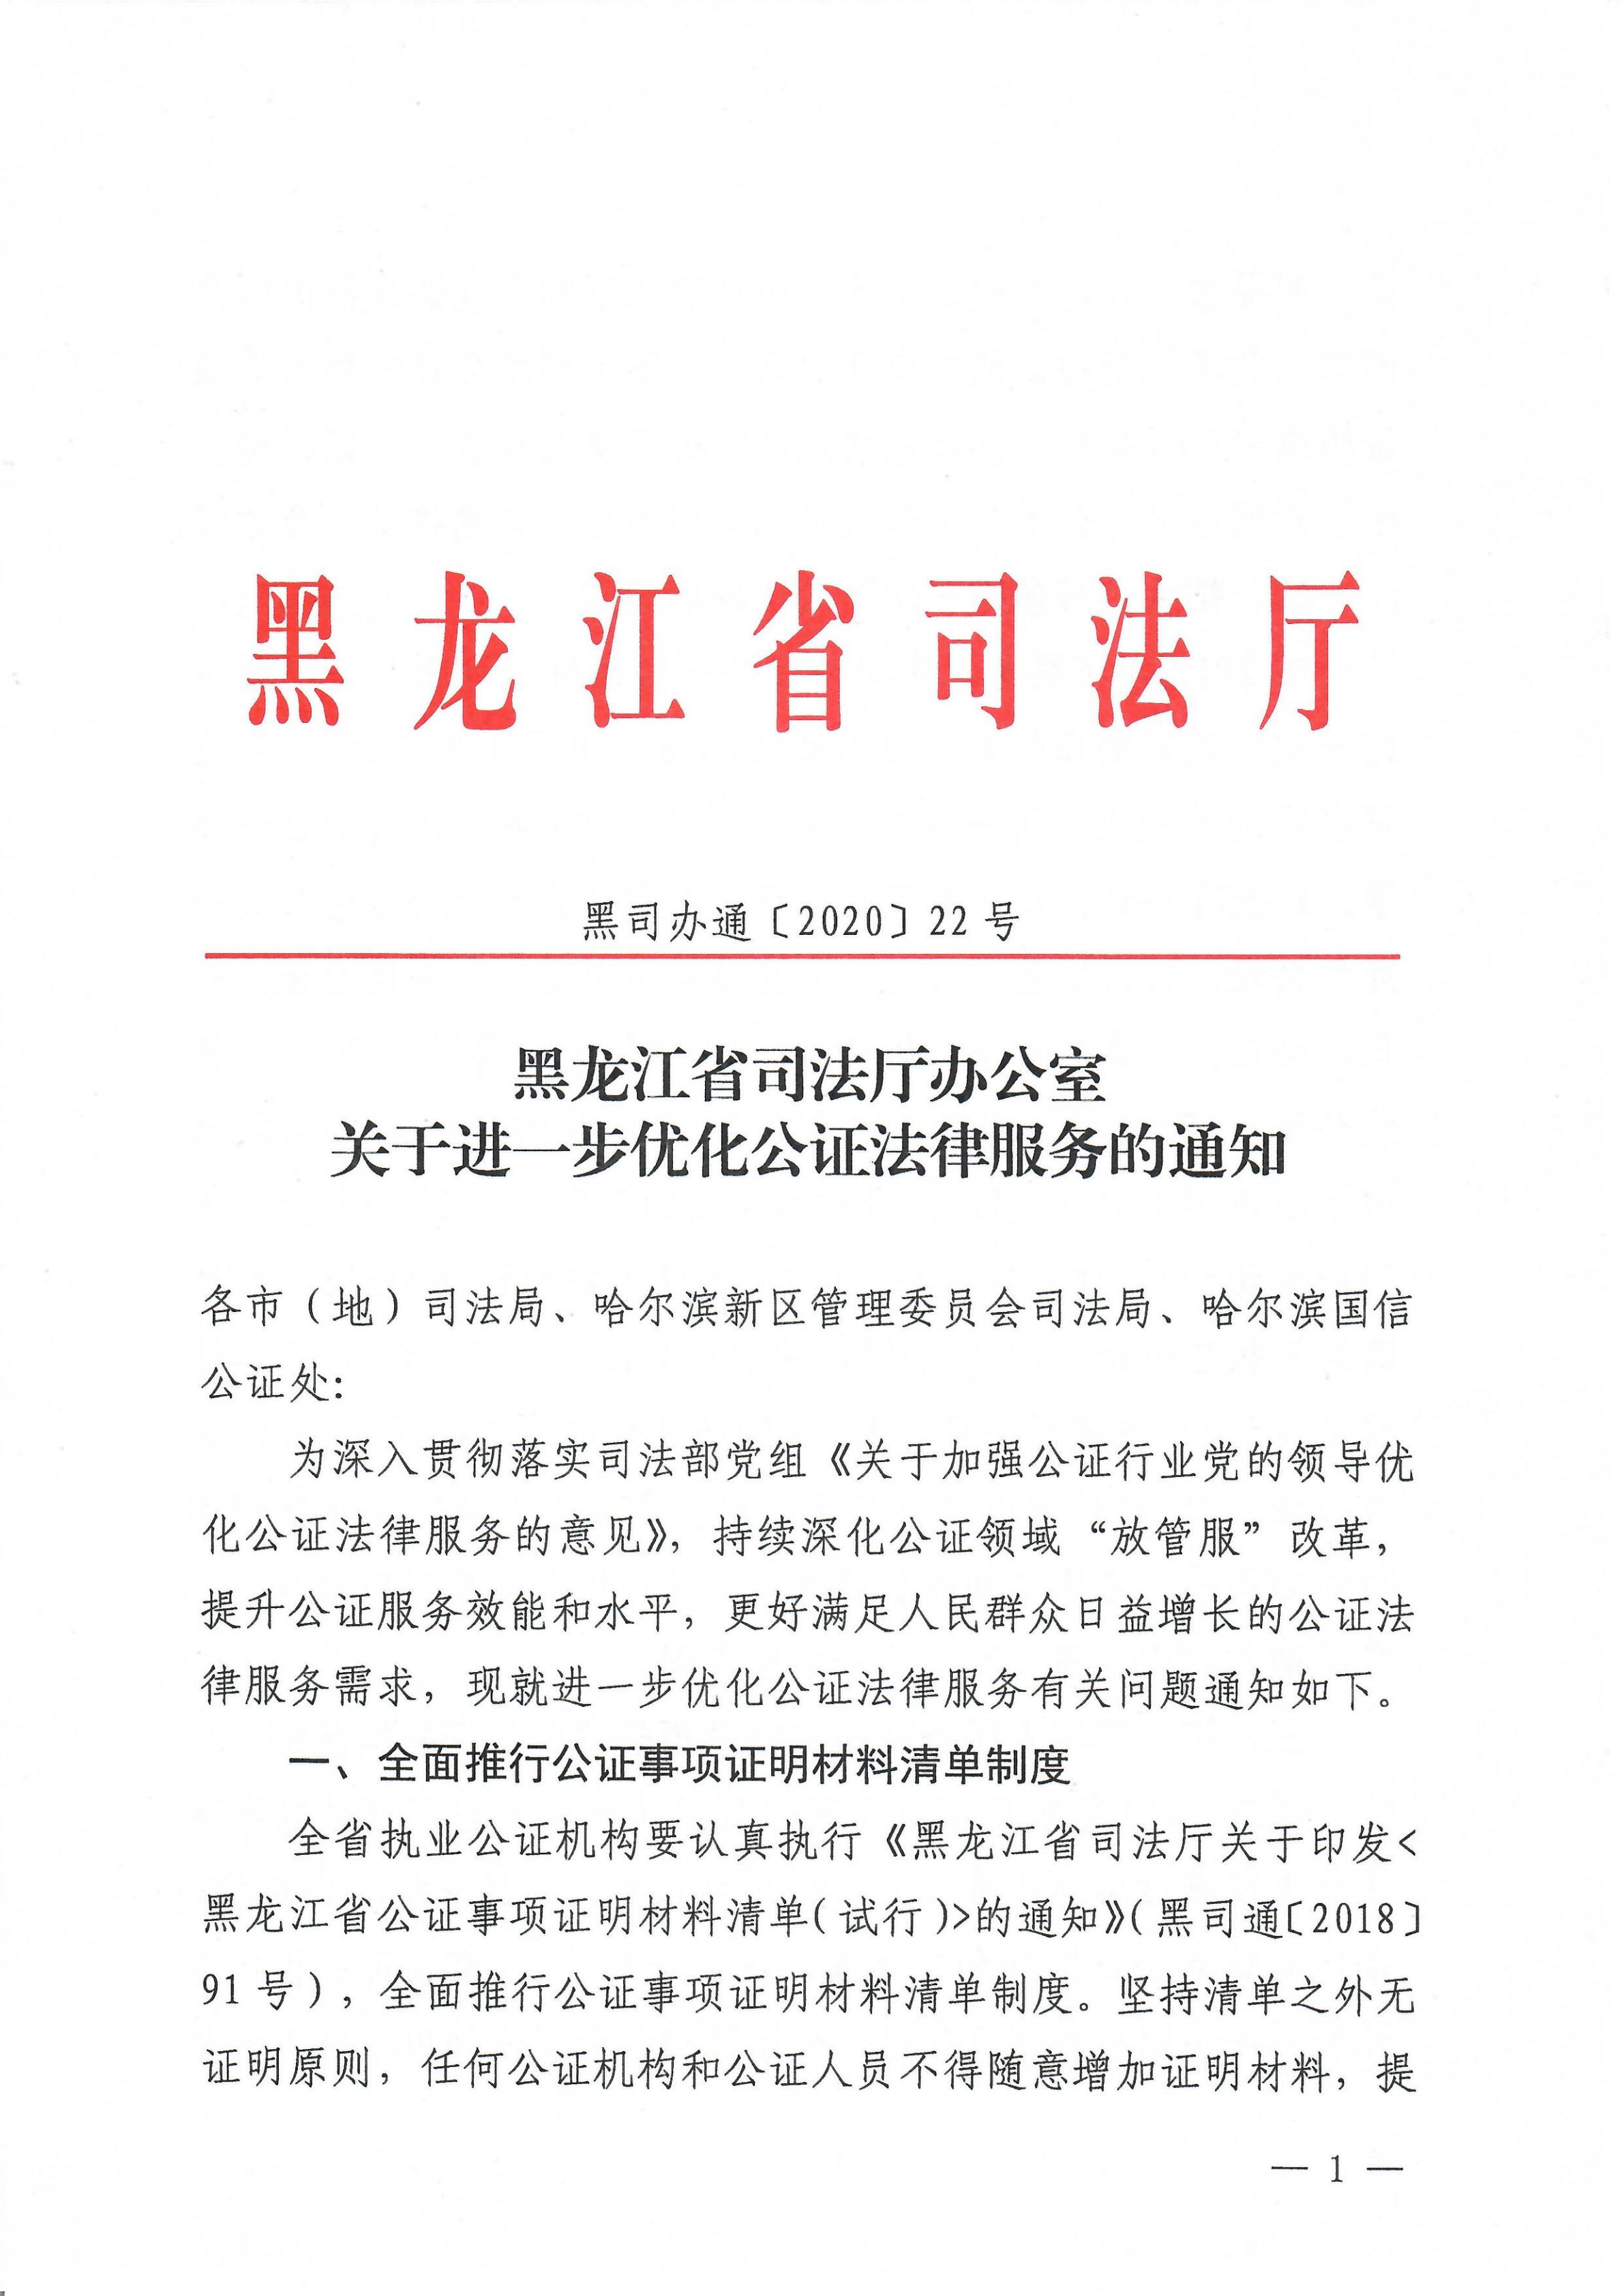 黑龙江省司法厅办公室关于进一步优化公证法律服务的通知